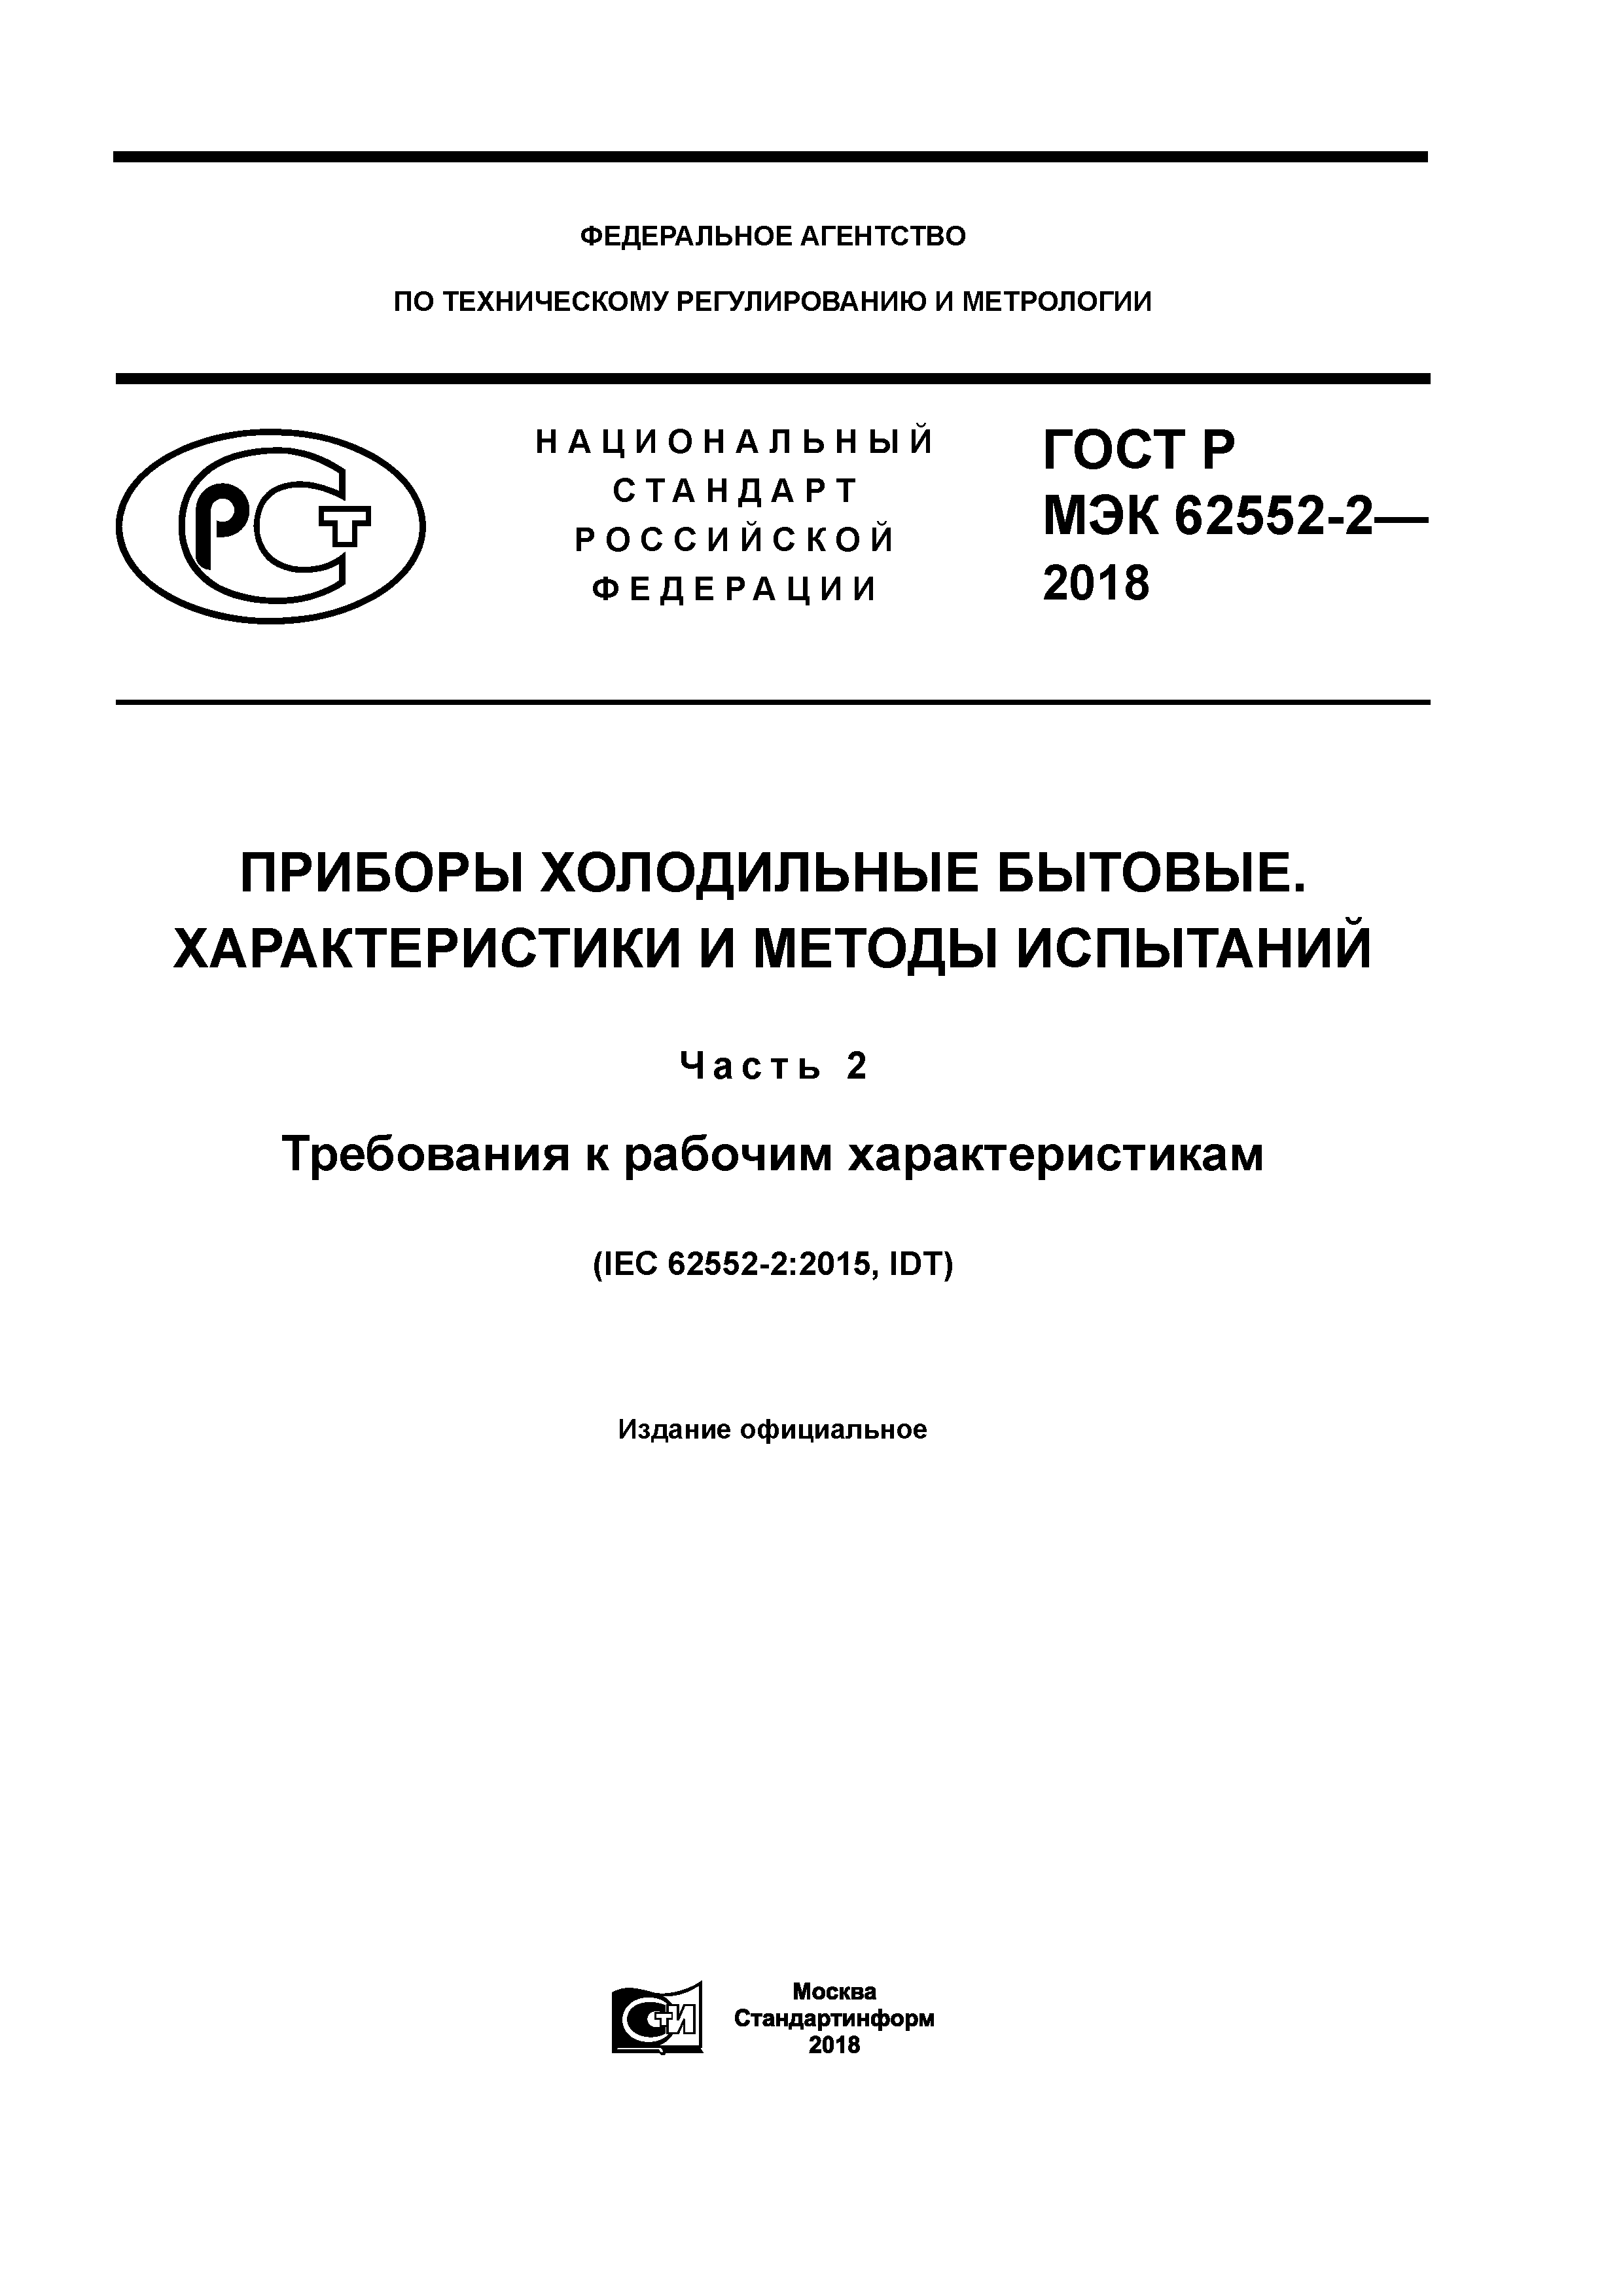 ГОСТ Р МЭК 62552-2-2018